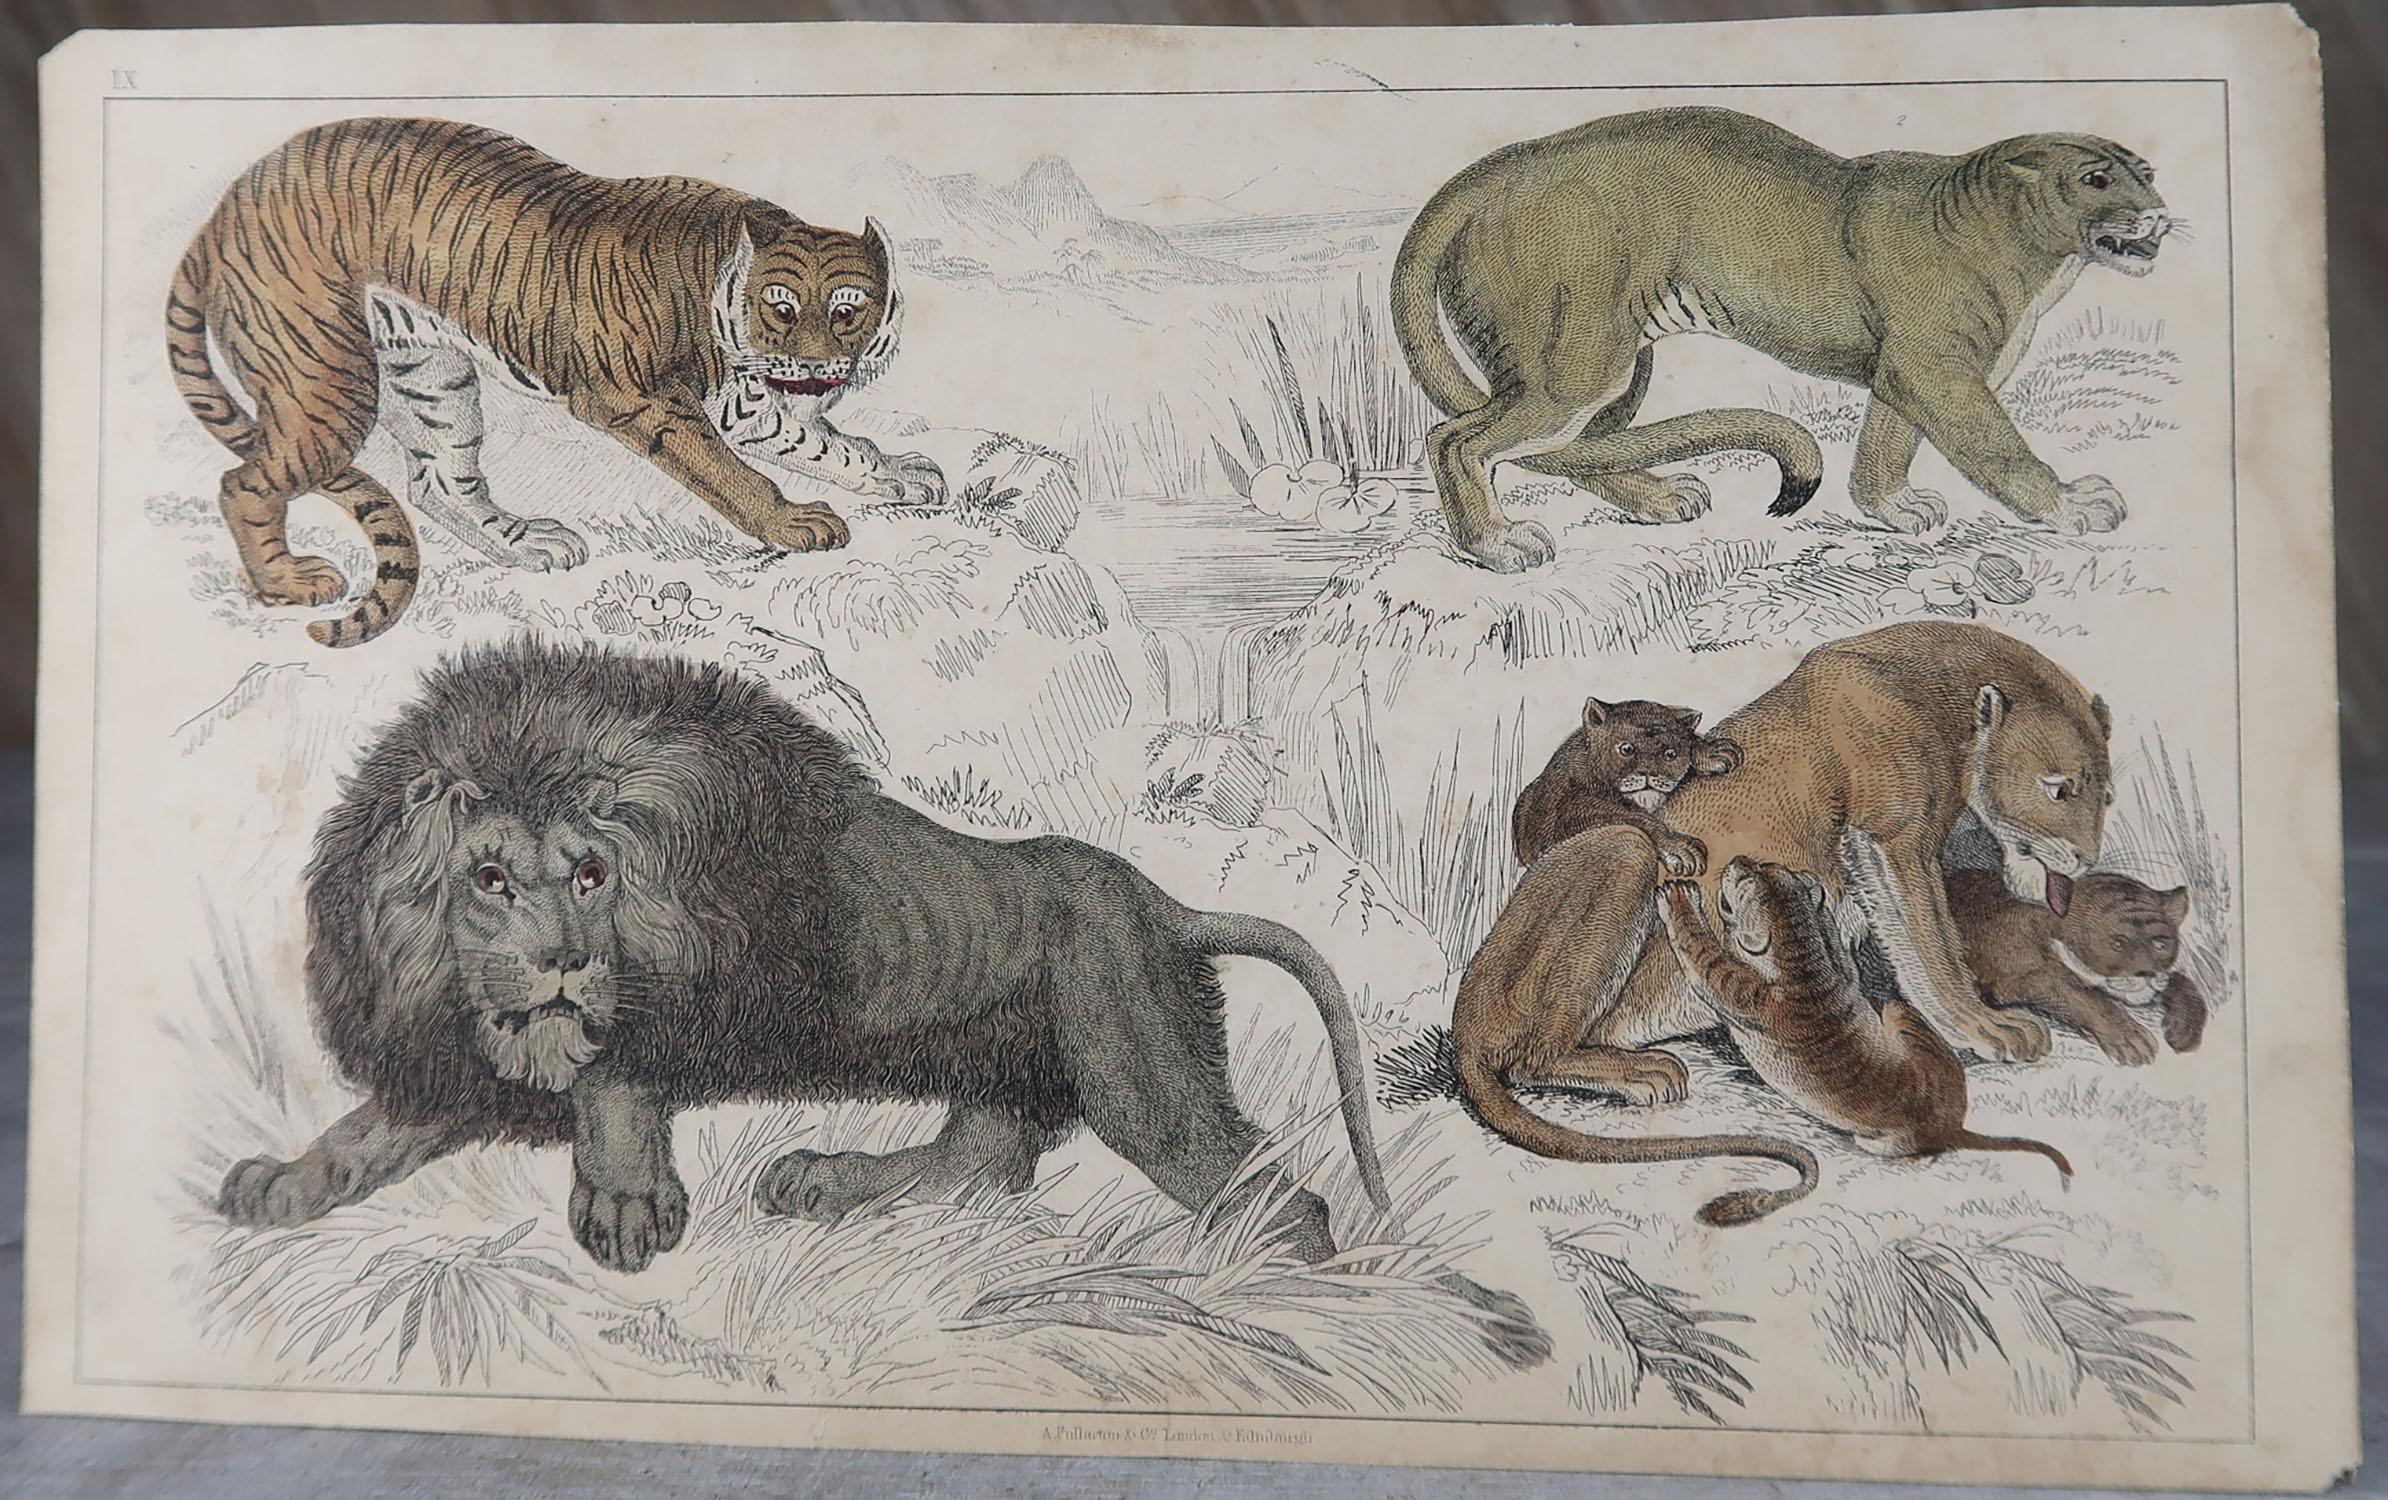 Folk Art Original Antique Print of Lions, 1847 'Unframed'